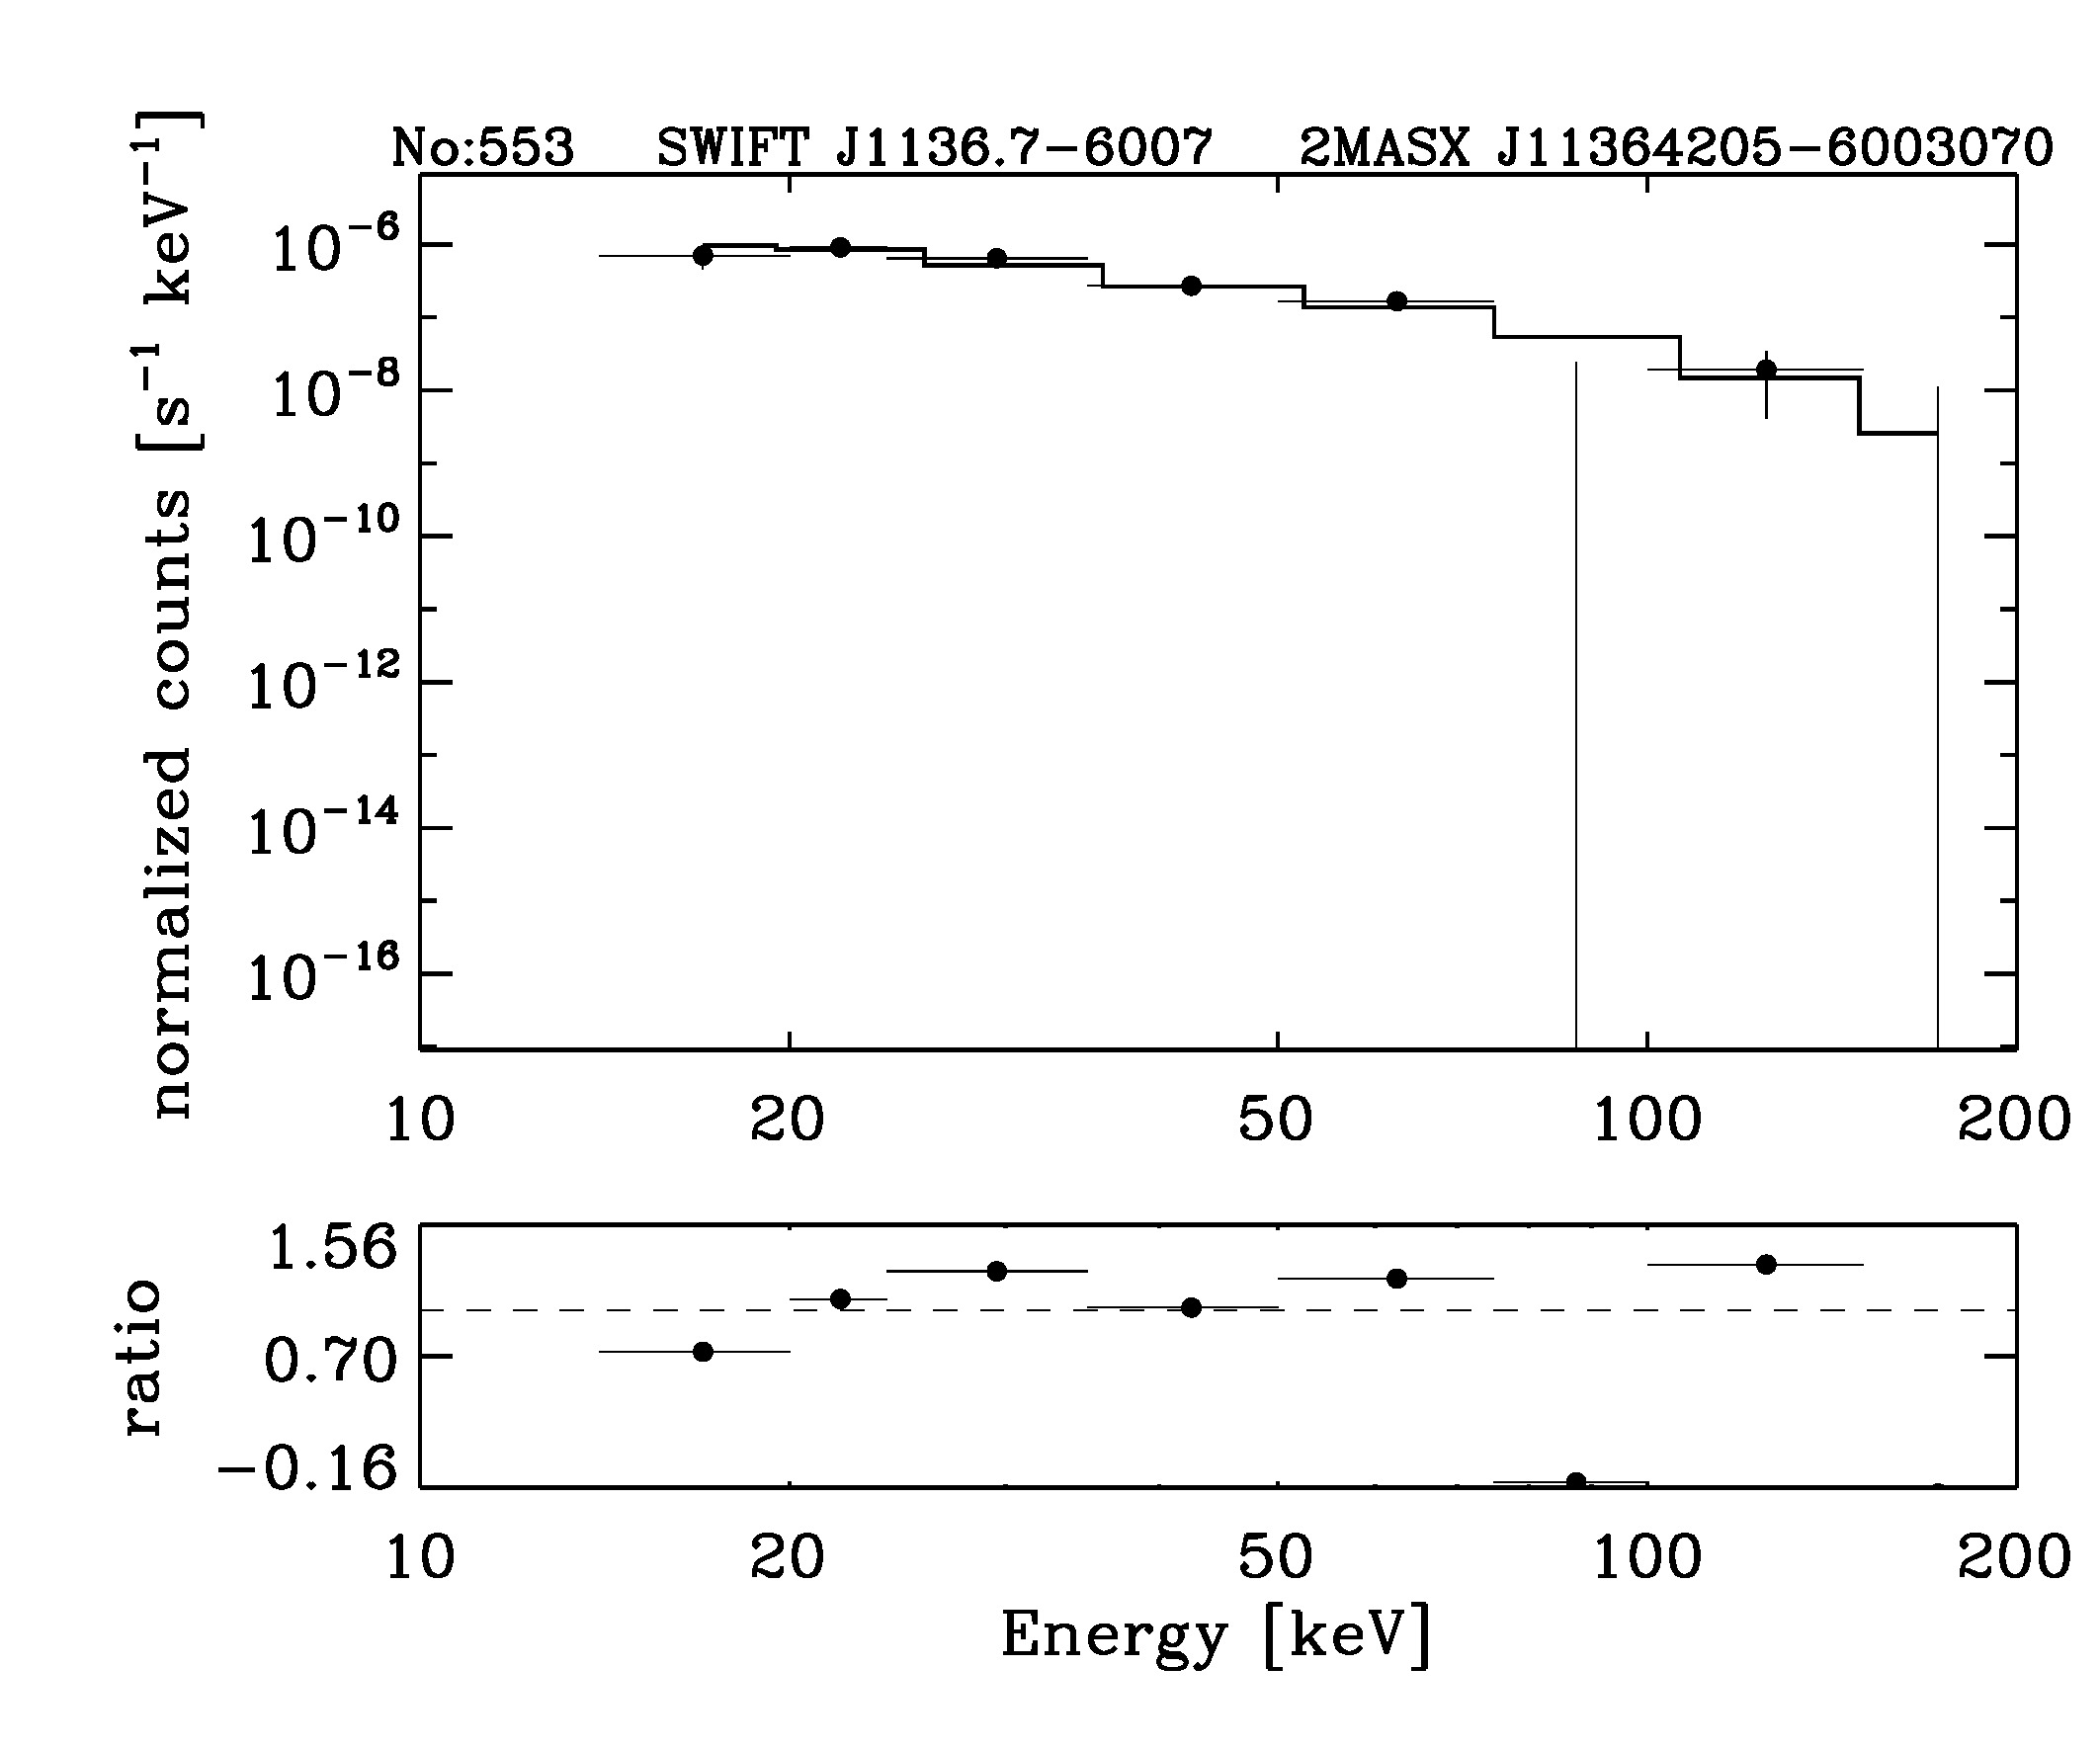 BAT Spectrum for SWIFT J1136.7-6007